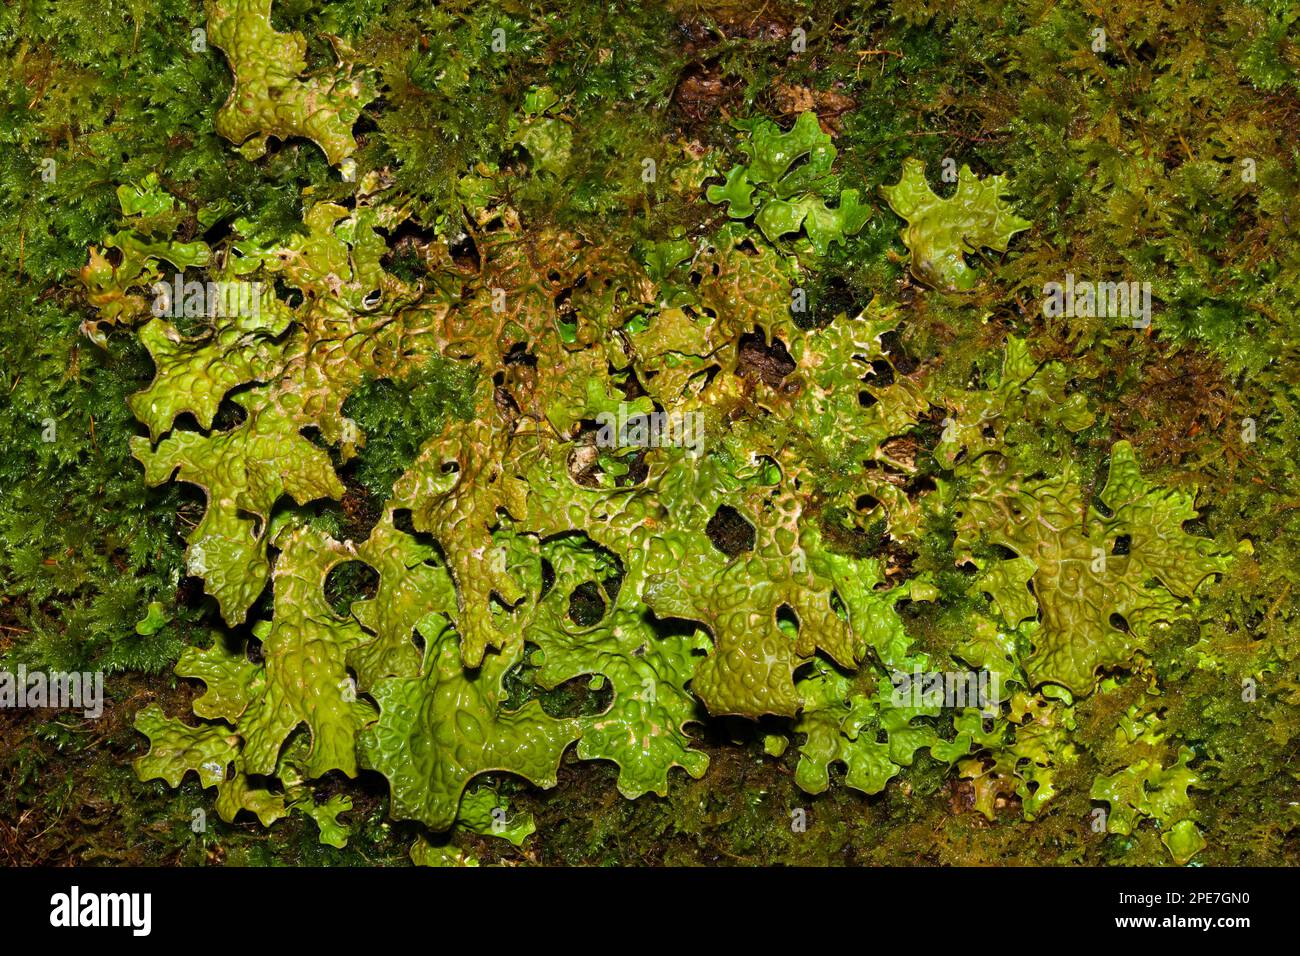 La Lobaria pulmonaria (lungwort dell'albero) è un lichen epifitico che si trova in un bosco antico. Si verifica in Europa, Asia, Nord America e Africa. Foto Stock